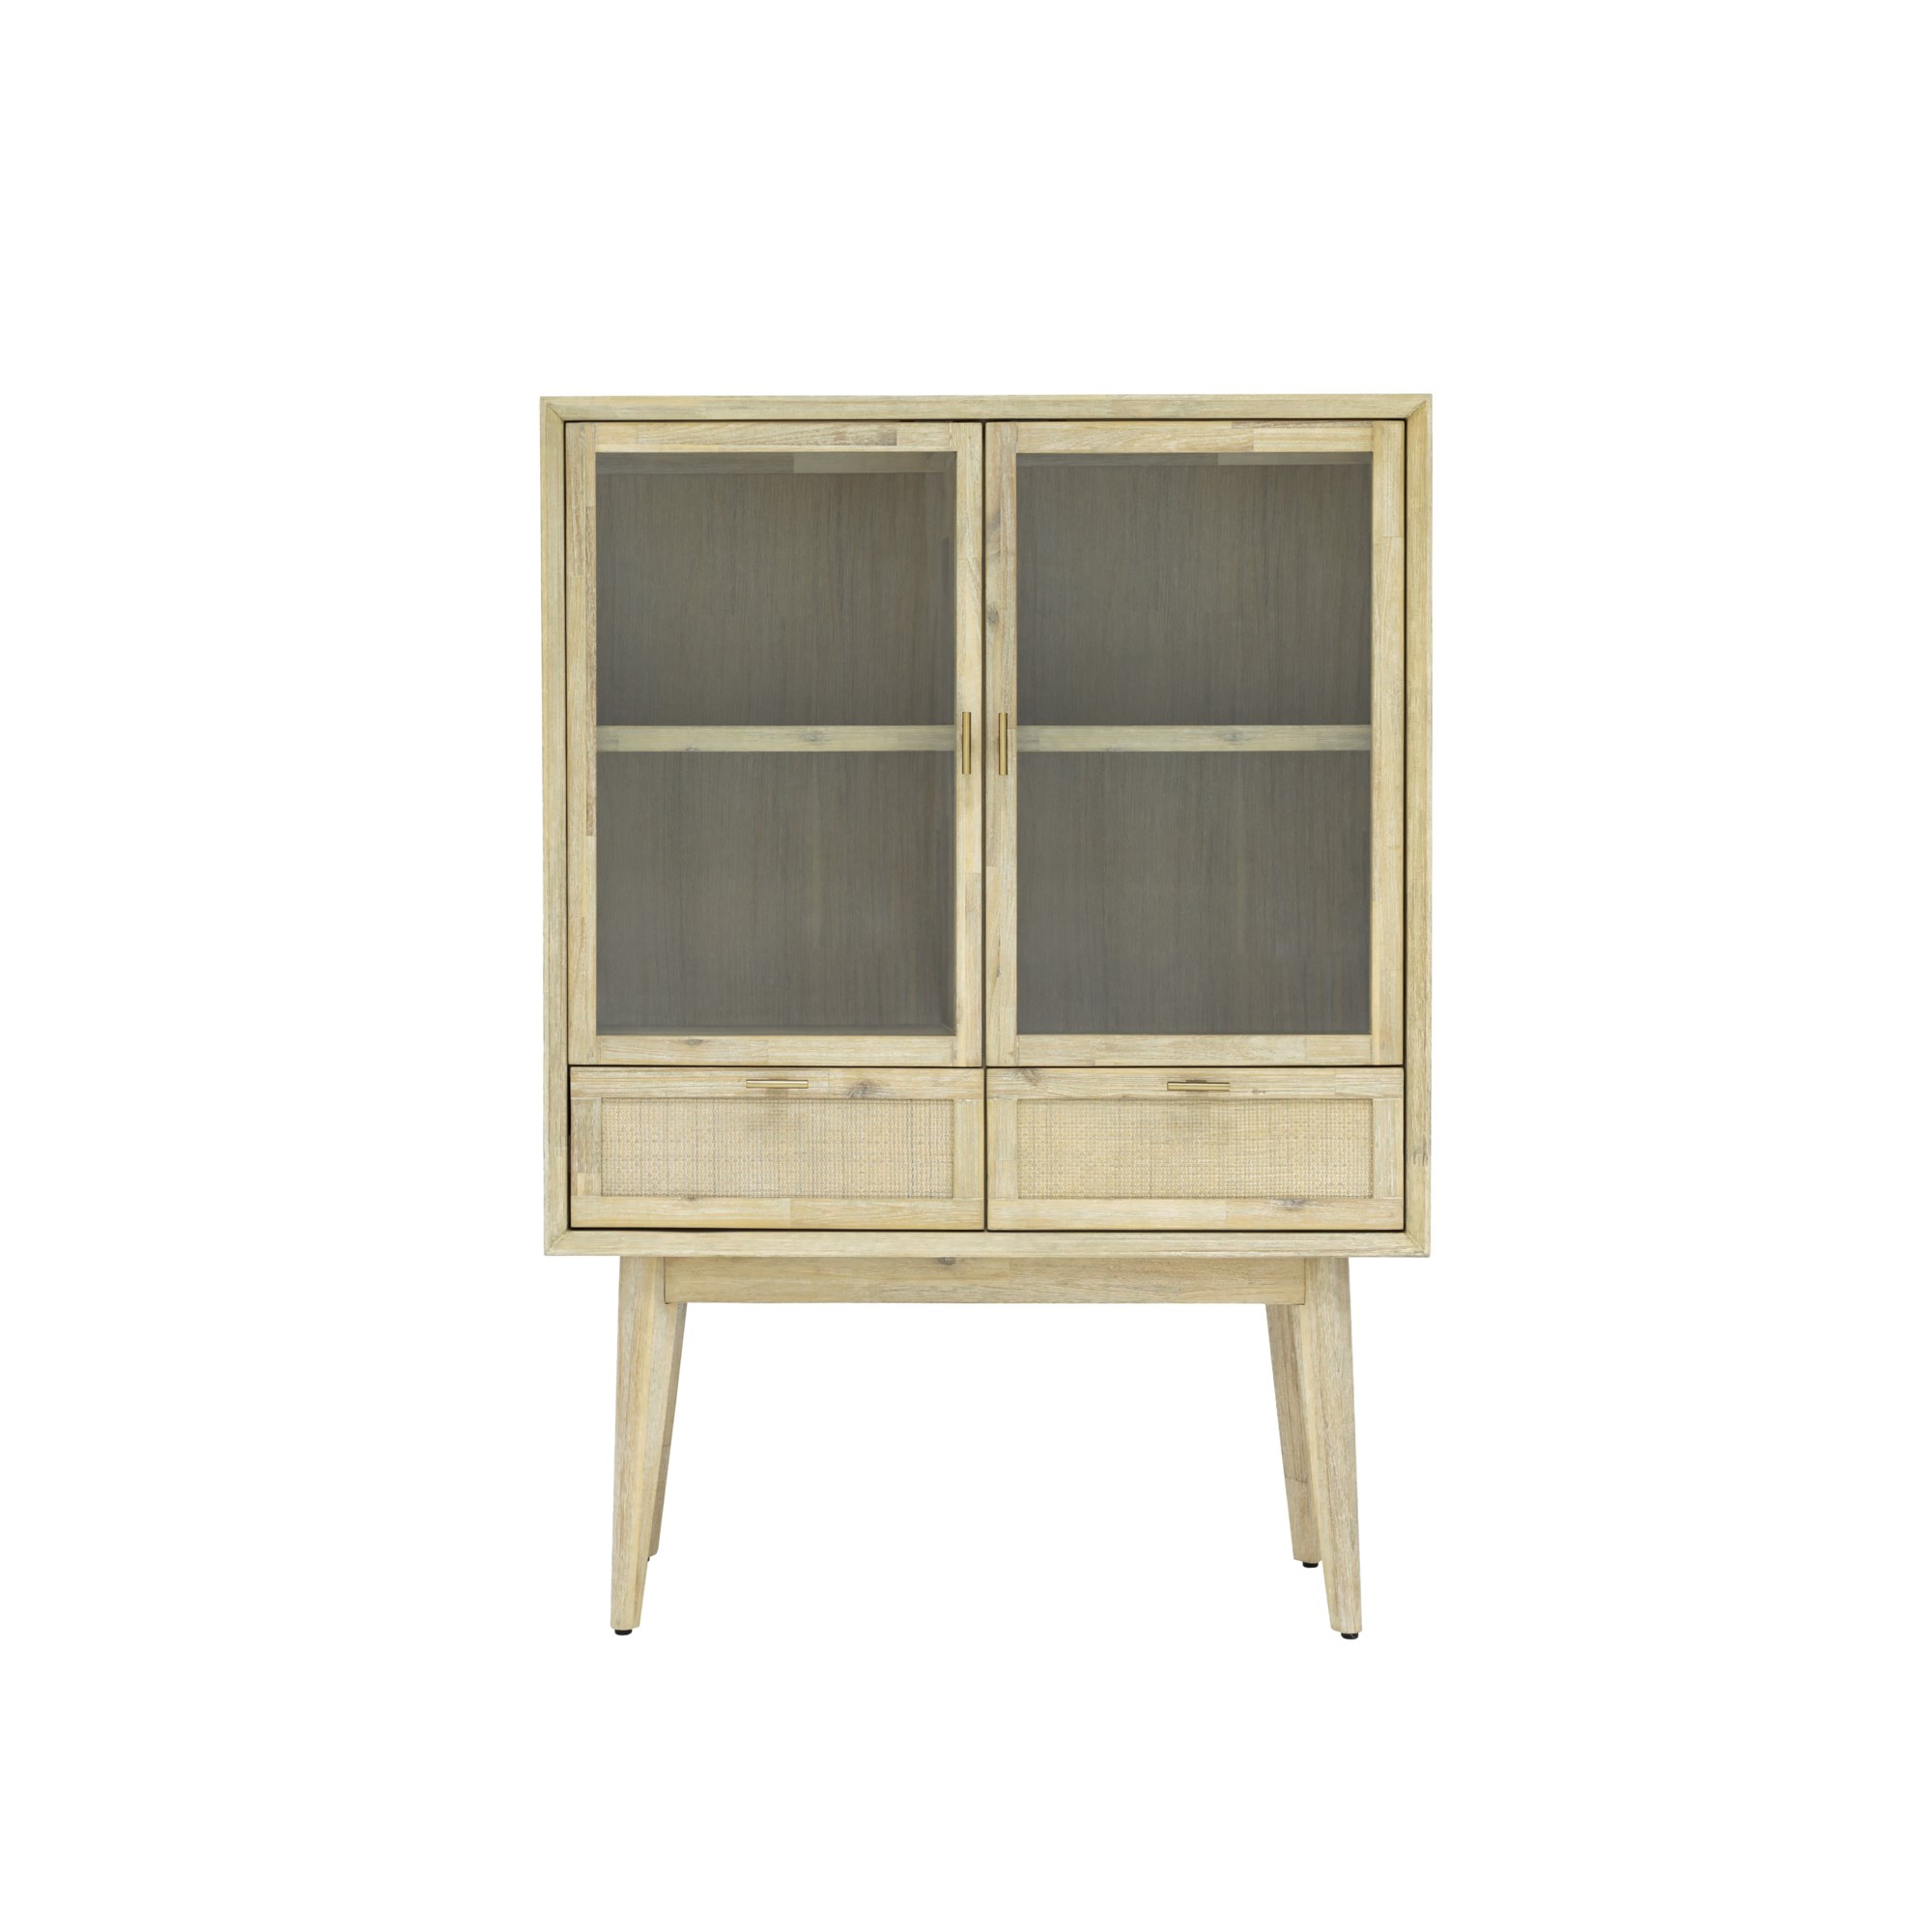 | HomeWorld Andes - Design | Furniture Bar ANDES-L04-NAT Evolution Bar Cabinet Storage Cabinets